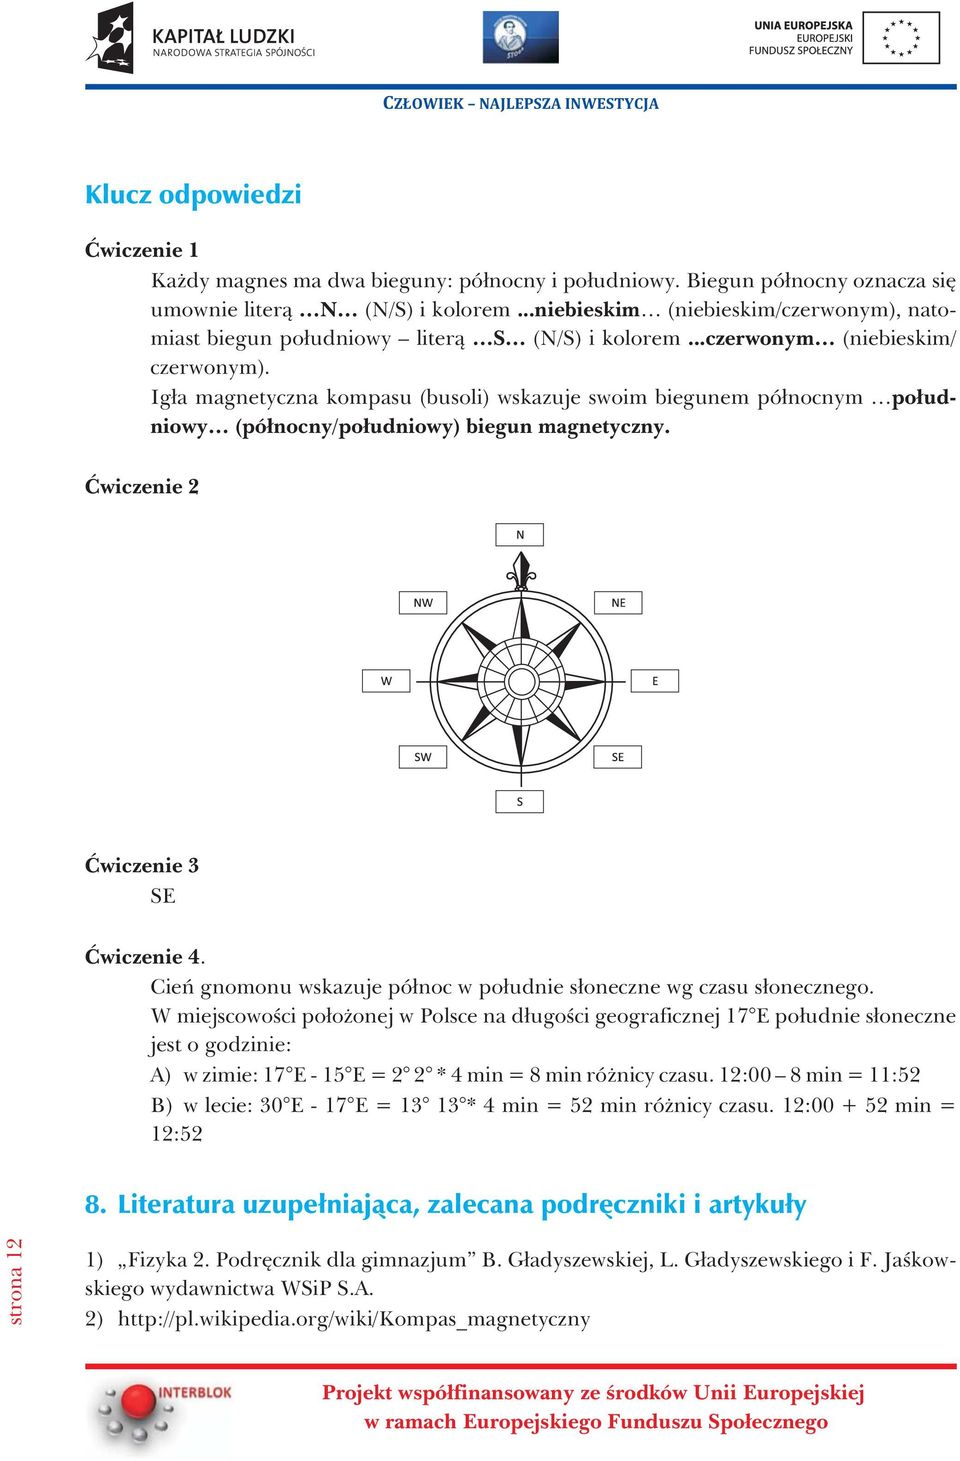 Ig³a magnetyczna kompasu (busoli) wskazuje swoim biegunem pó³nocnym po³udniowy (pó³nocny/po³udniowy) biegun magnetyczny. Æwiczenie 2 Æwiczenie 3 SE Æwiczenie 4.